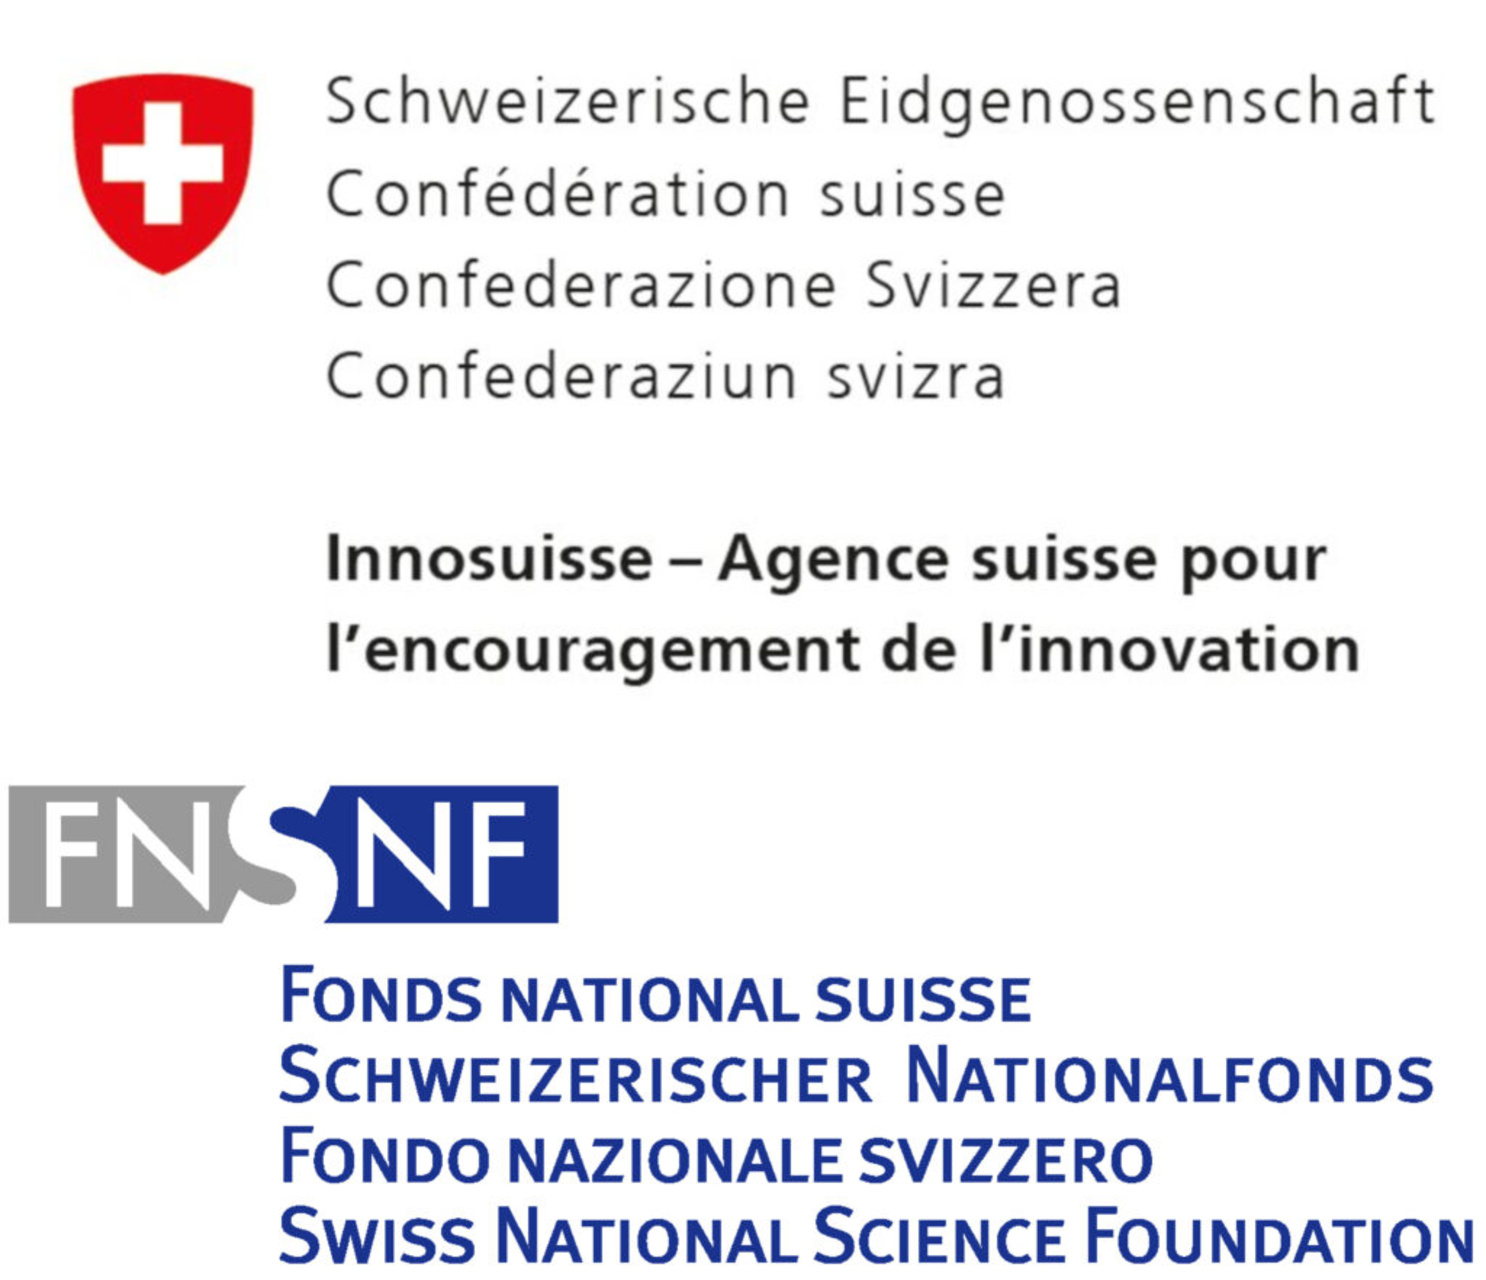 Izglītība, pētniecība un inovācijas: vēstījums Federālās padomes parlamentam ERI sektora veicināšanai četru gadu periodā 2025–2028 un Šveices vadībai